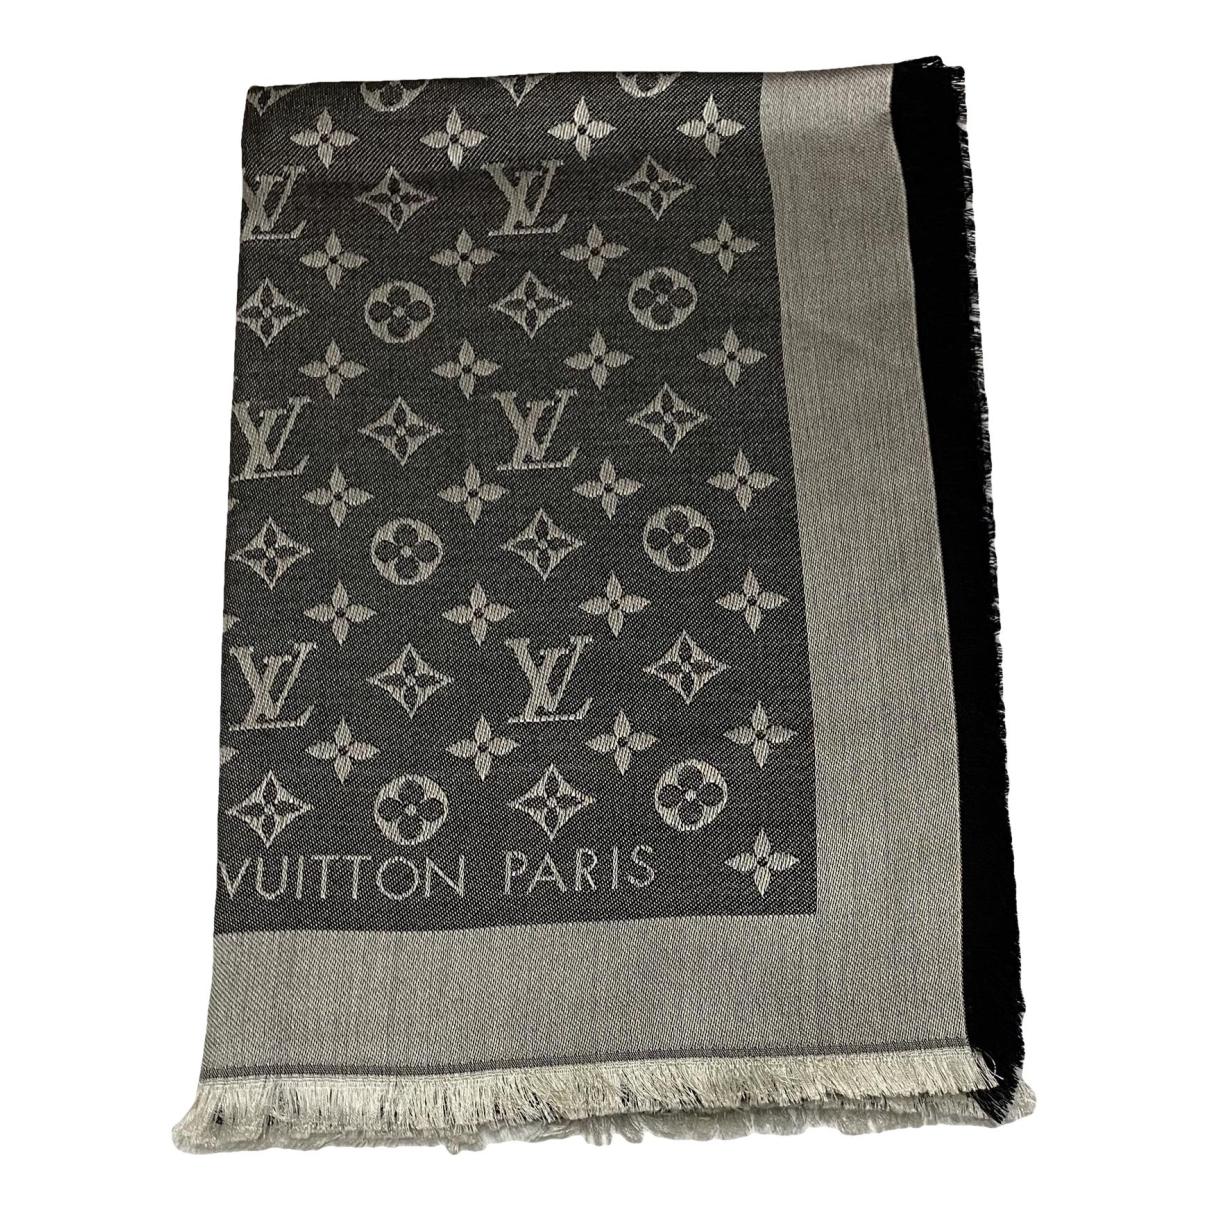 Silk scarf Louis Vuitton Pink in Silk - 27654395